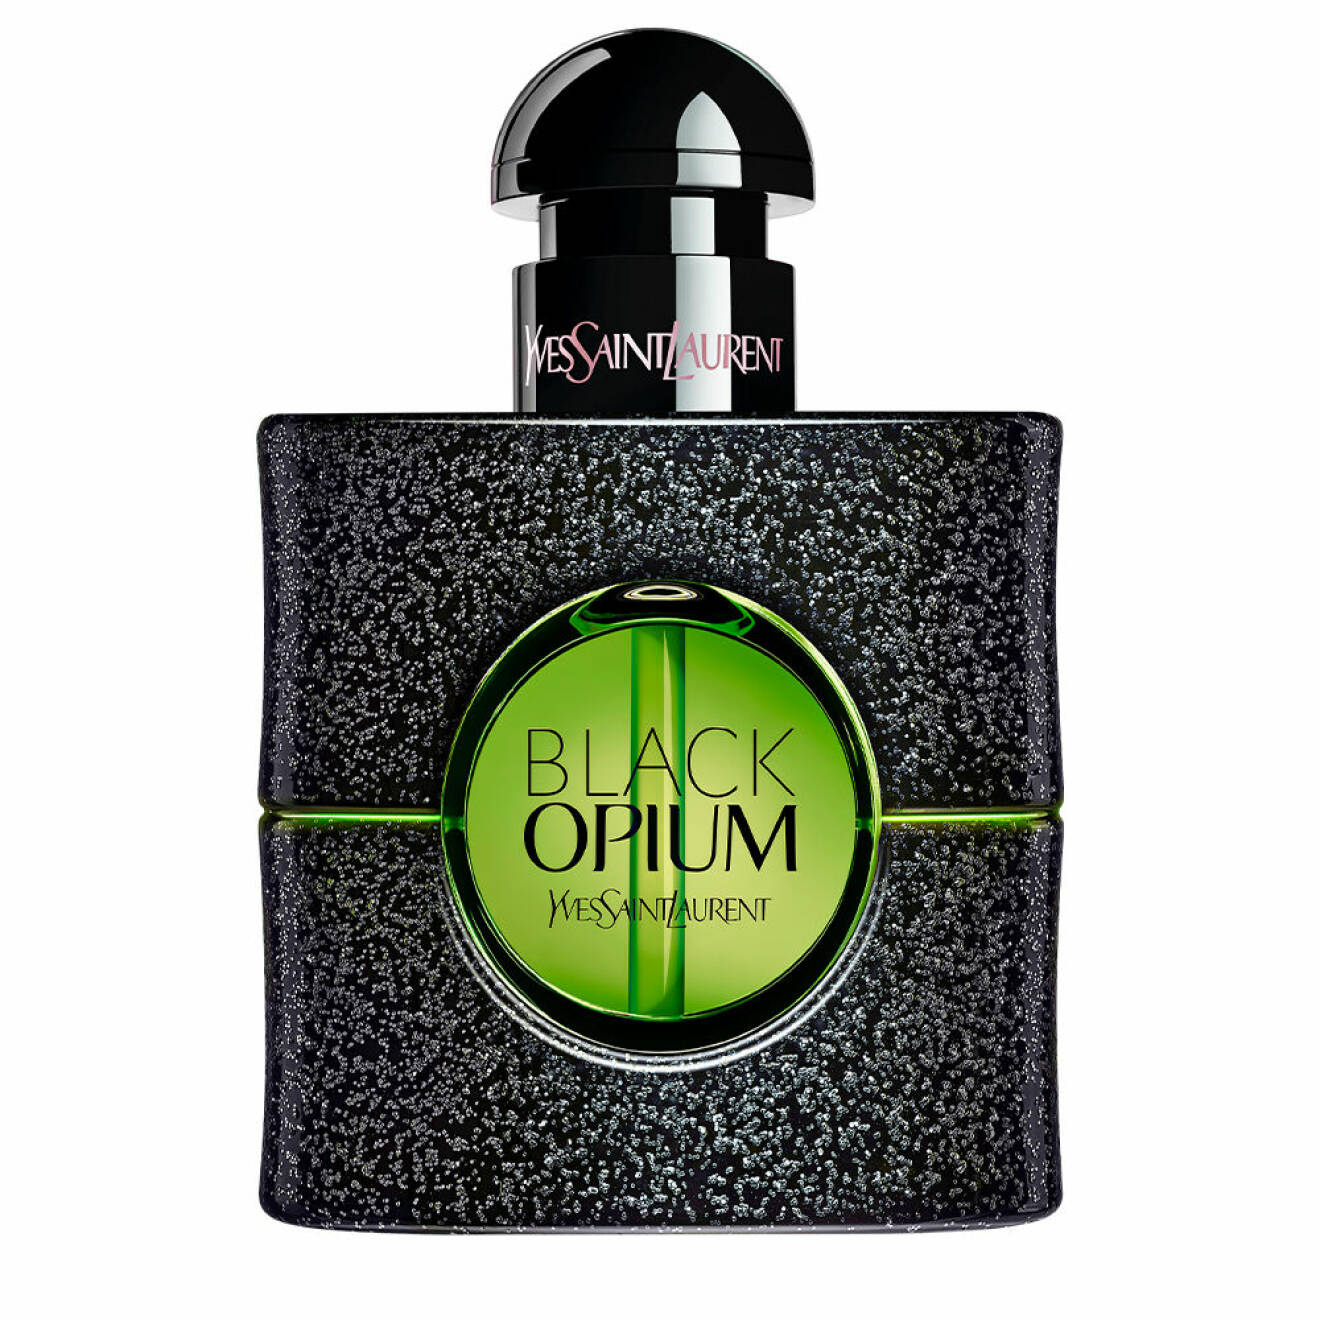 <i>Black opium</i>, 625 kr/30 ml edp, YSL.